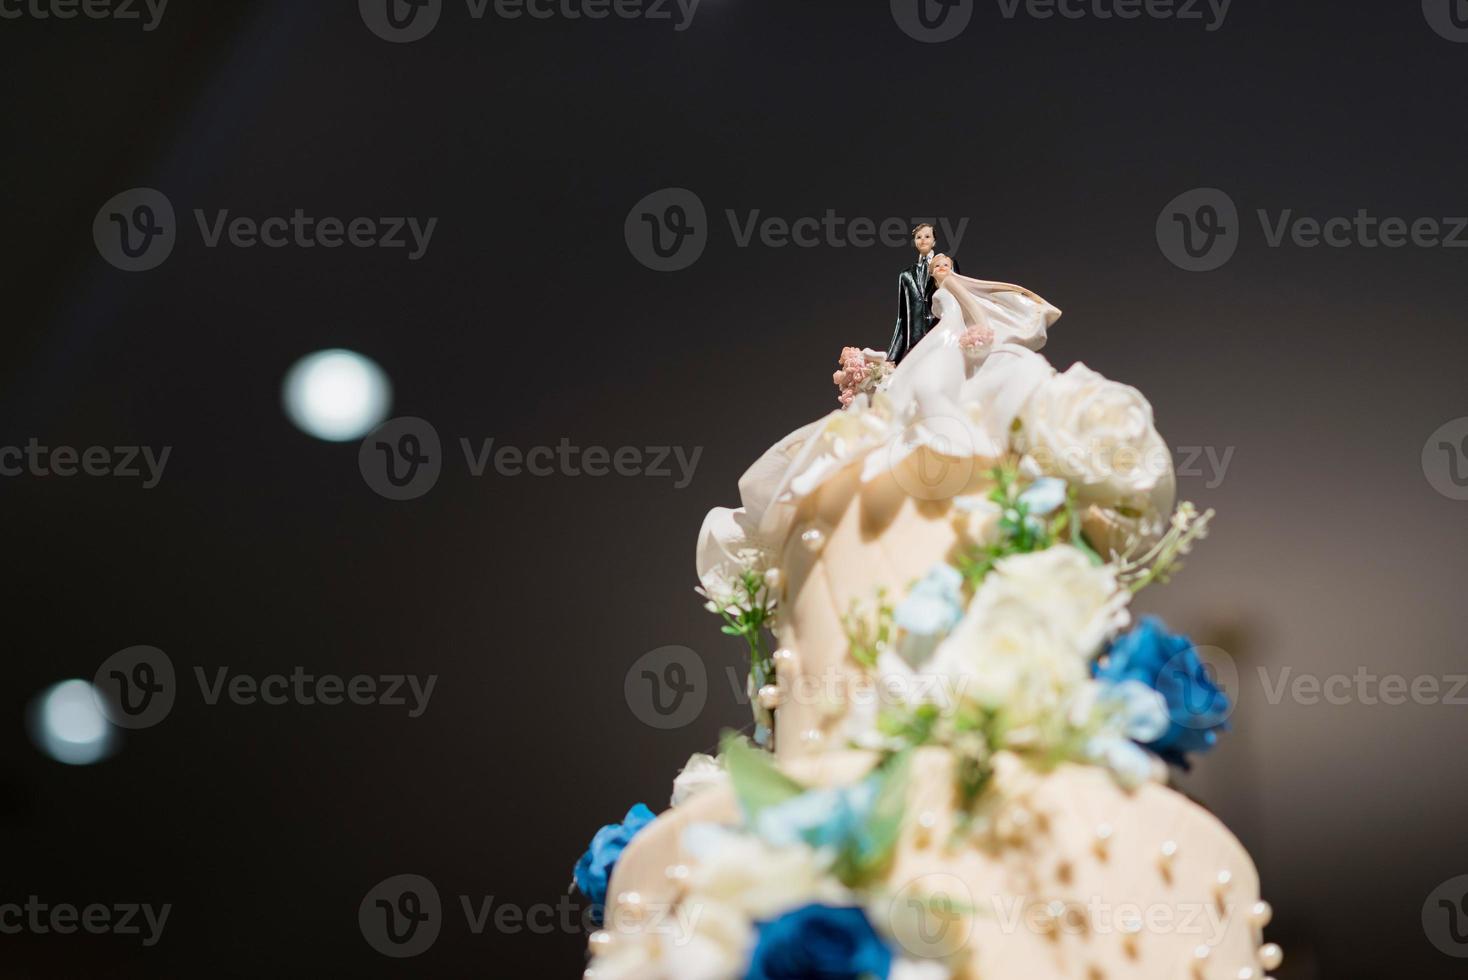 Hochzeitspuppenkuchen, Liebespaar, Teddybär auf Hochzeitstorte foto